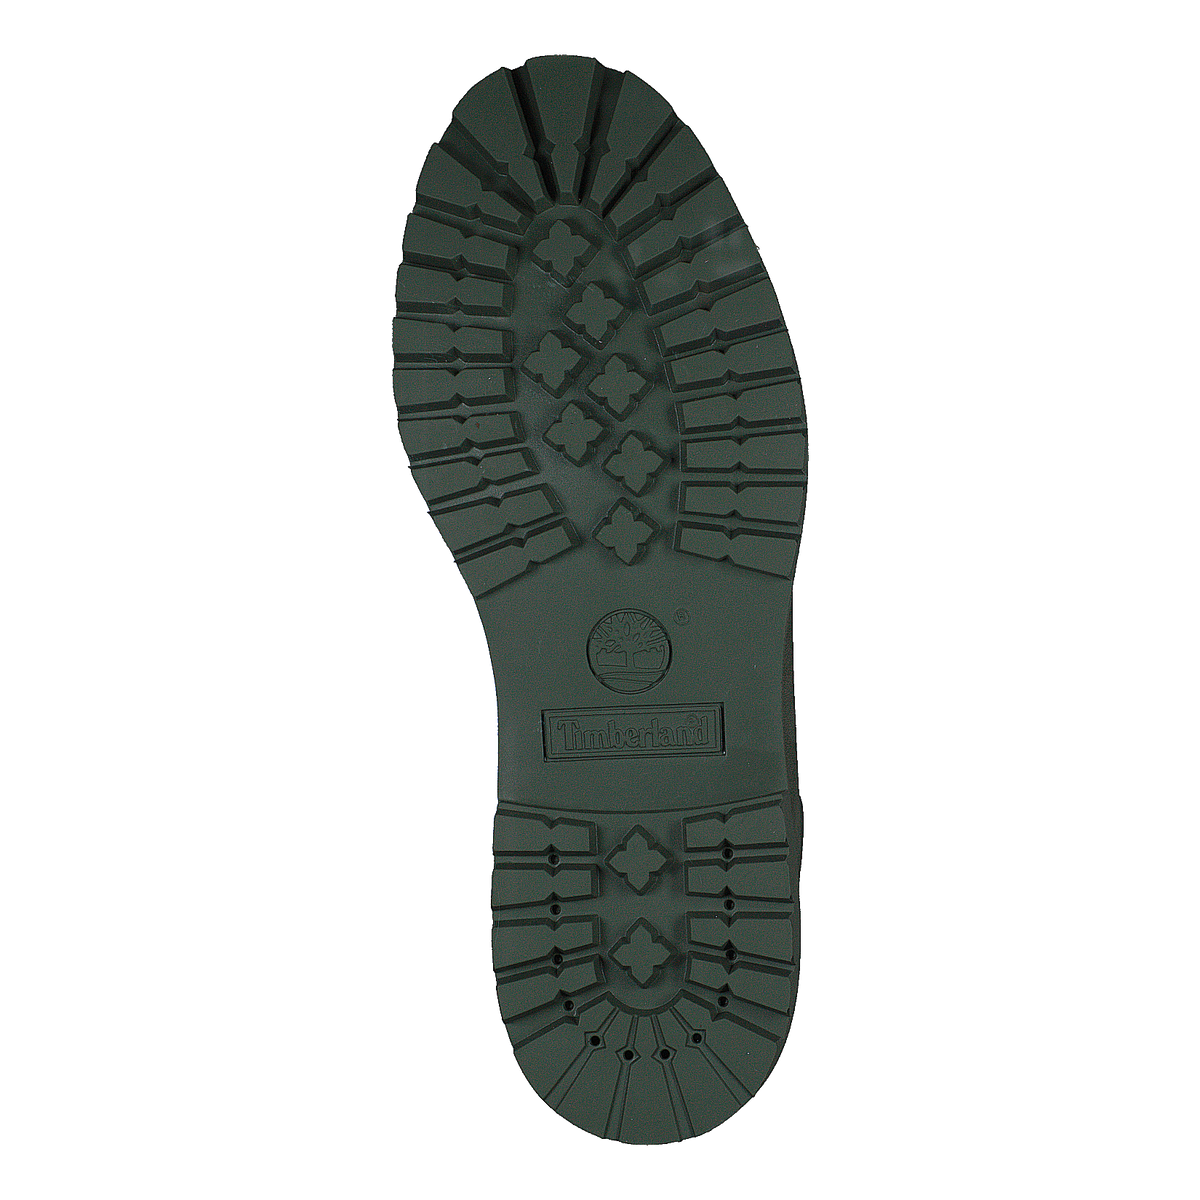 Timberland 6 Inch Premium Boot